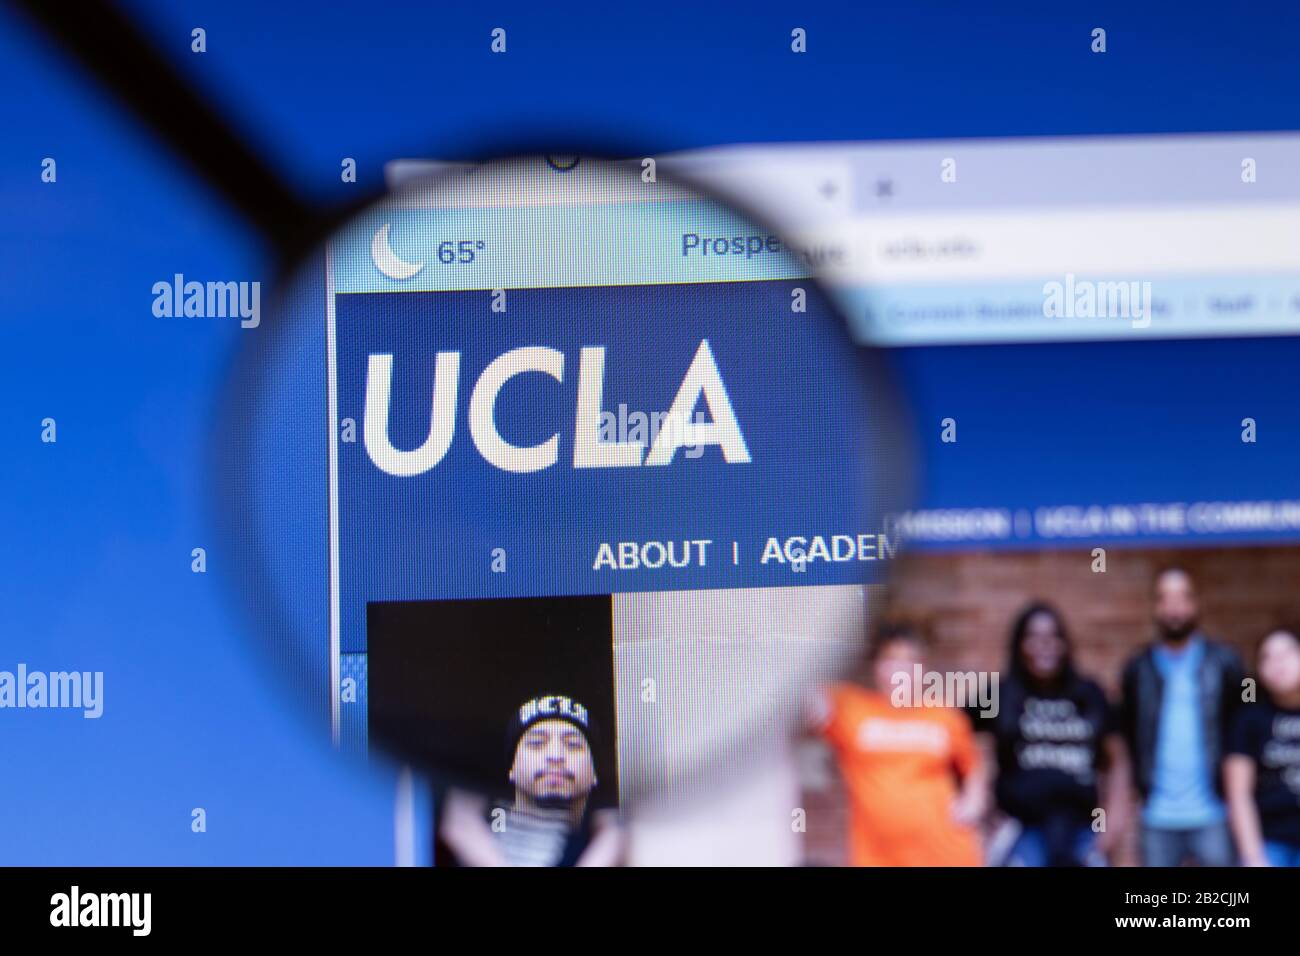 Los Angeles, California, Stati Uniti - 3 marzo 2020: Logo della home page del sito UCLA di Los Angeles, visibile sullo schermo, Illustrativo Foto Stock